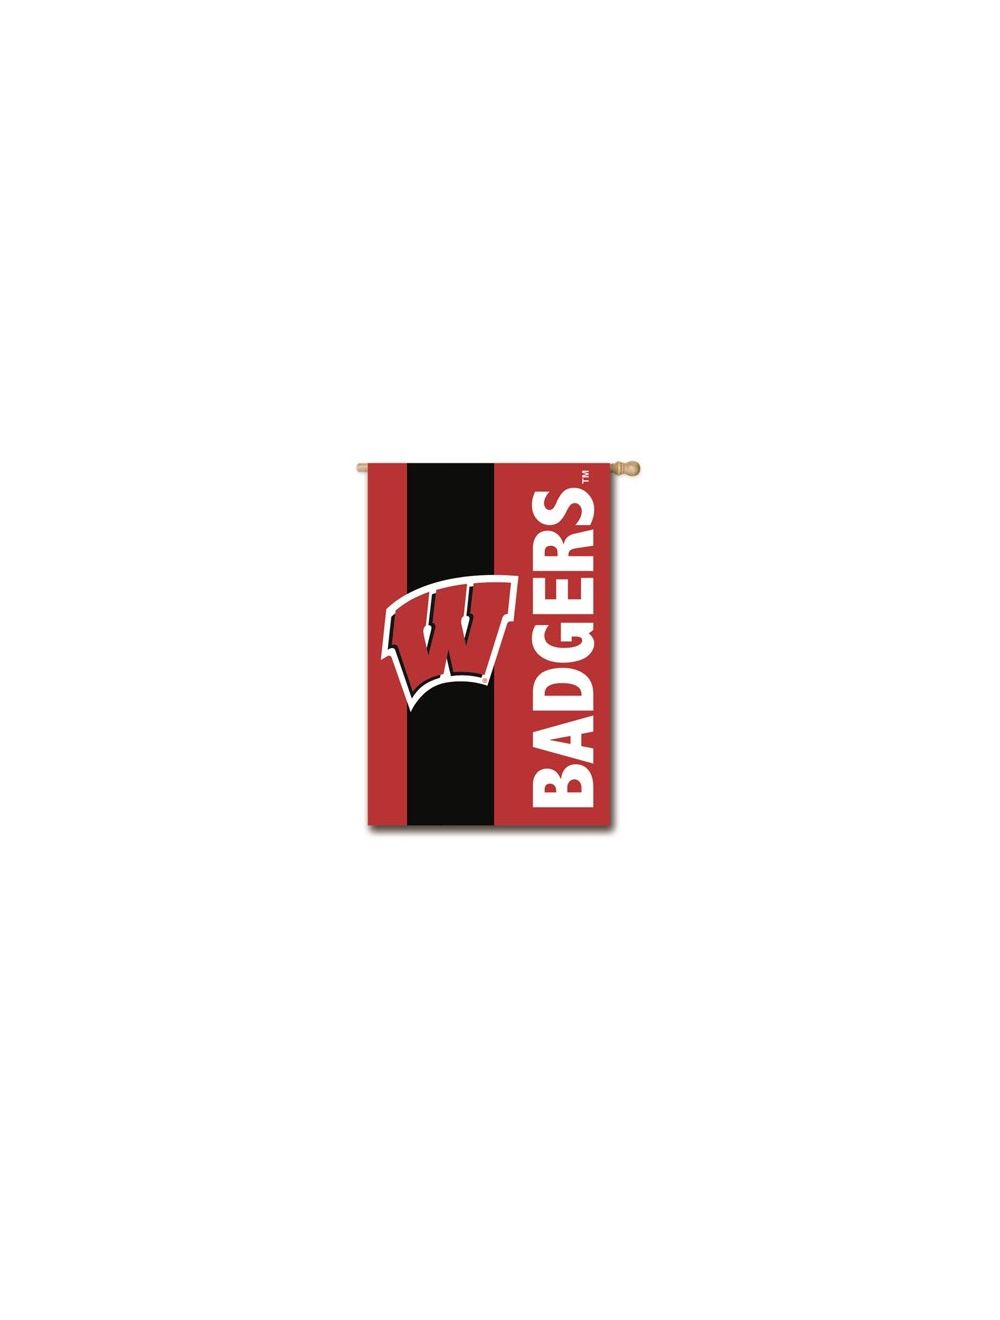 uw badgers logo